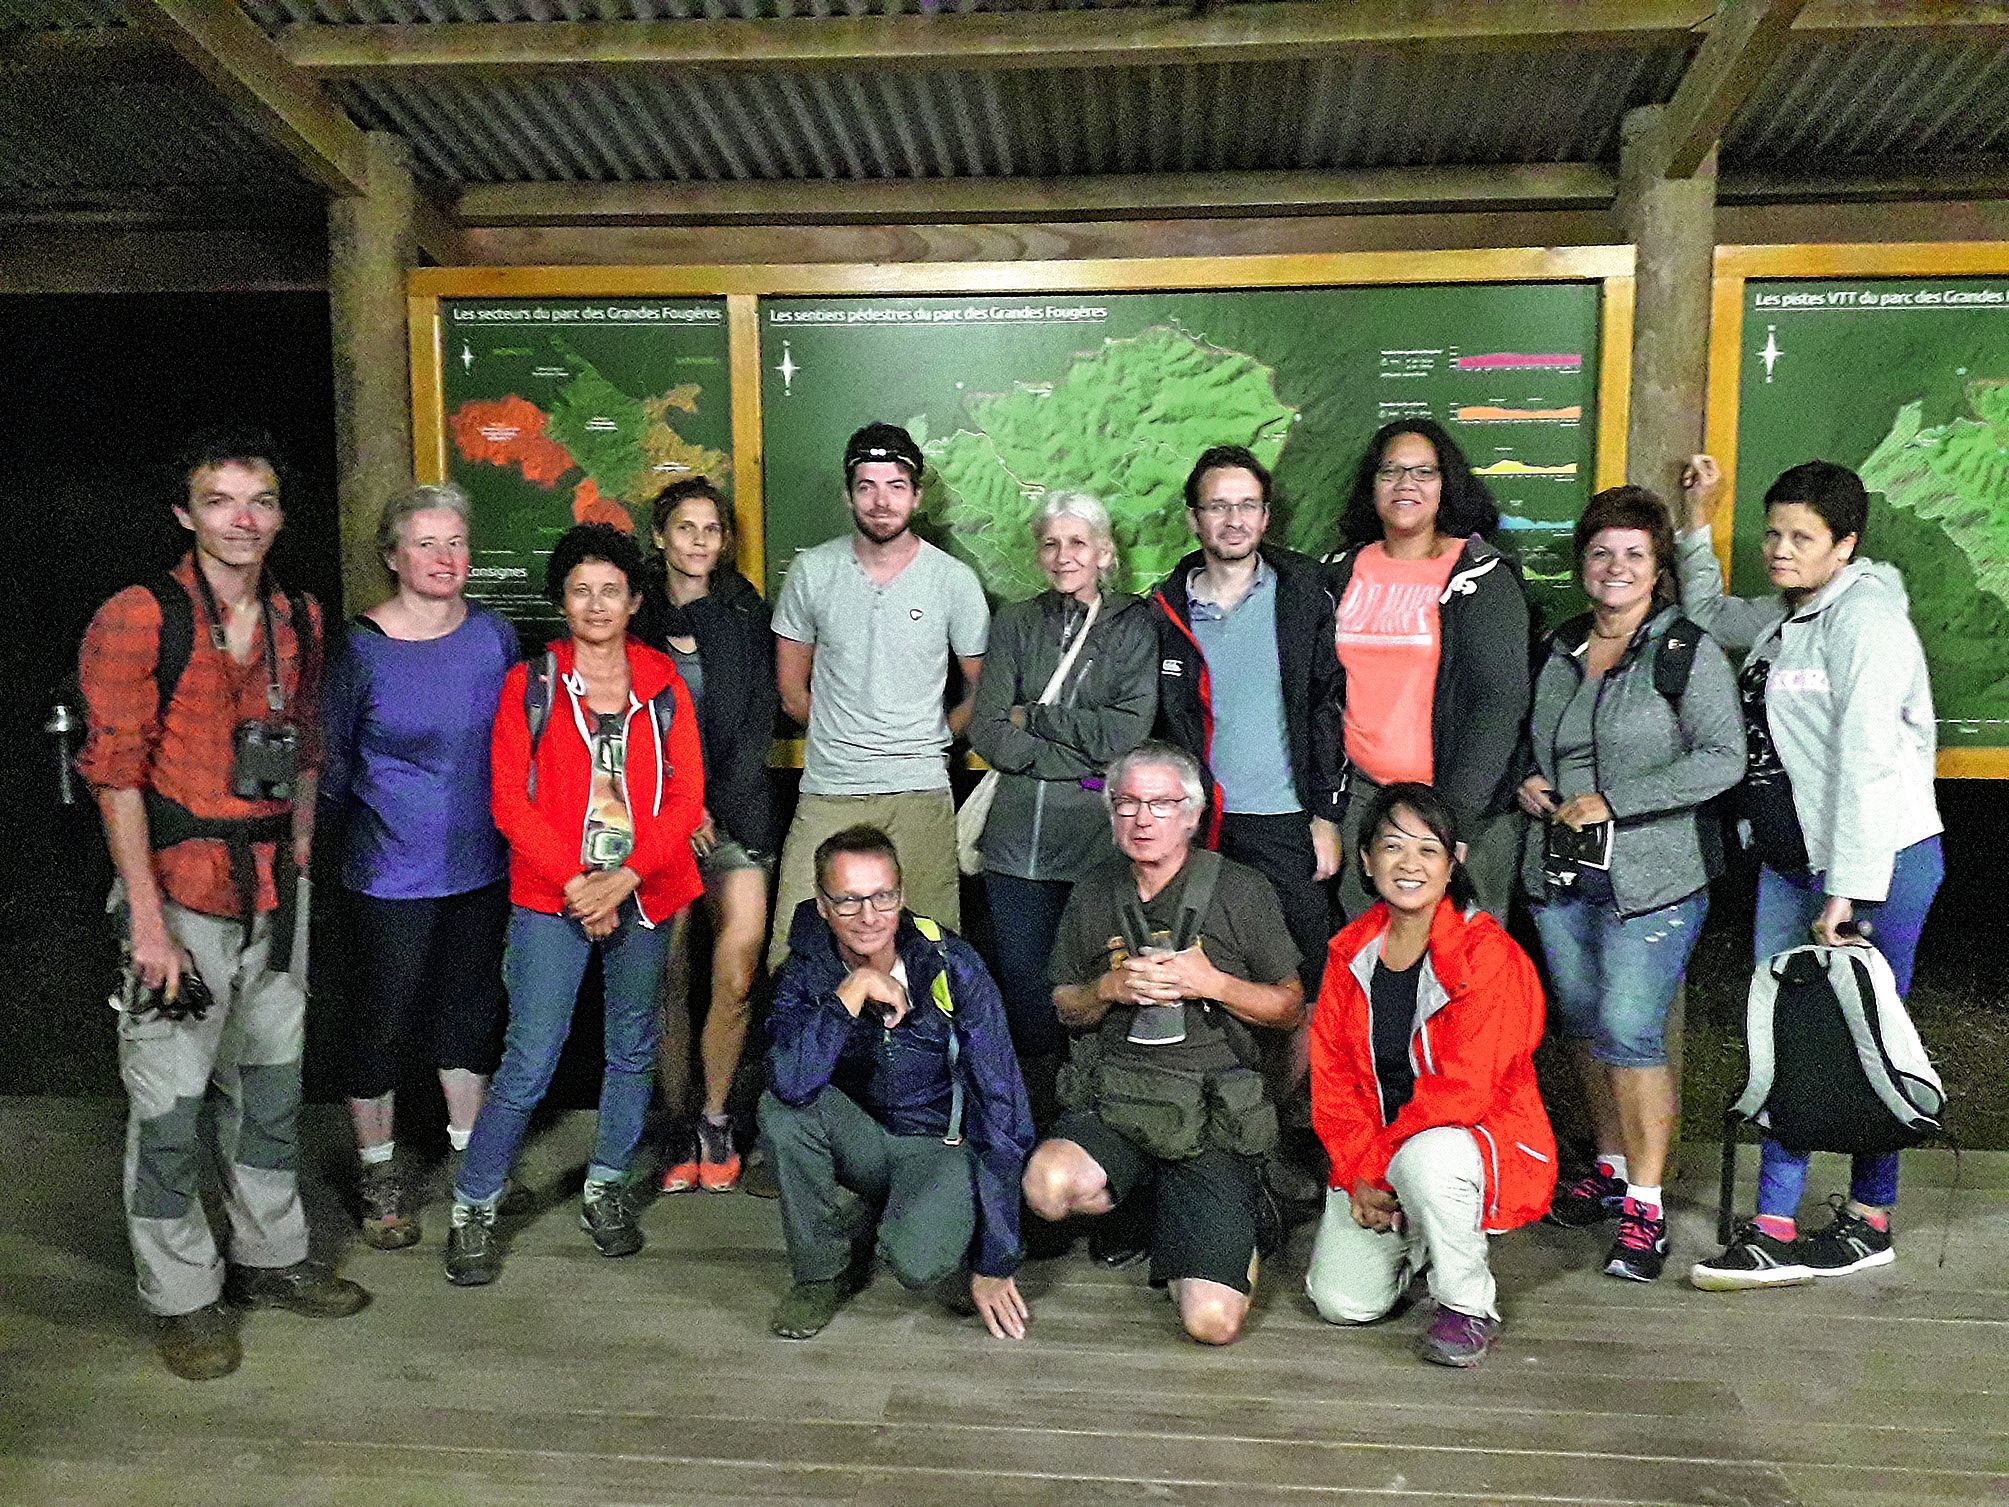 Douze promeneurs ont souhaité découvrir les geckos du parc des Grandes Fougères samedi dernier, avec le guide Matthias Deuss. La petite troupe est partie pour une balade de deux heures dans la forêt. Une façon sympathique d’aborder l’univers nocturne du p